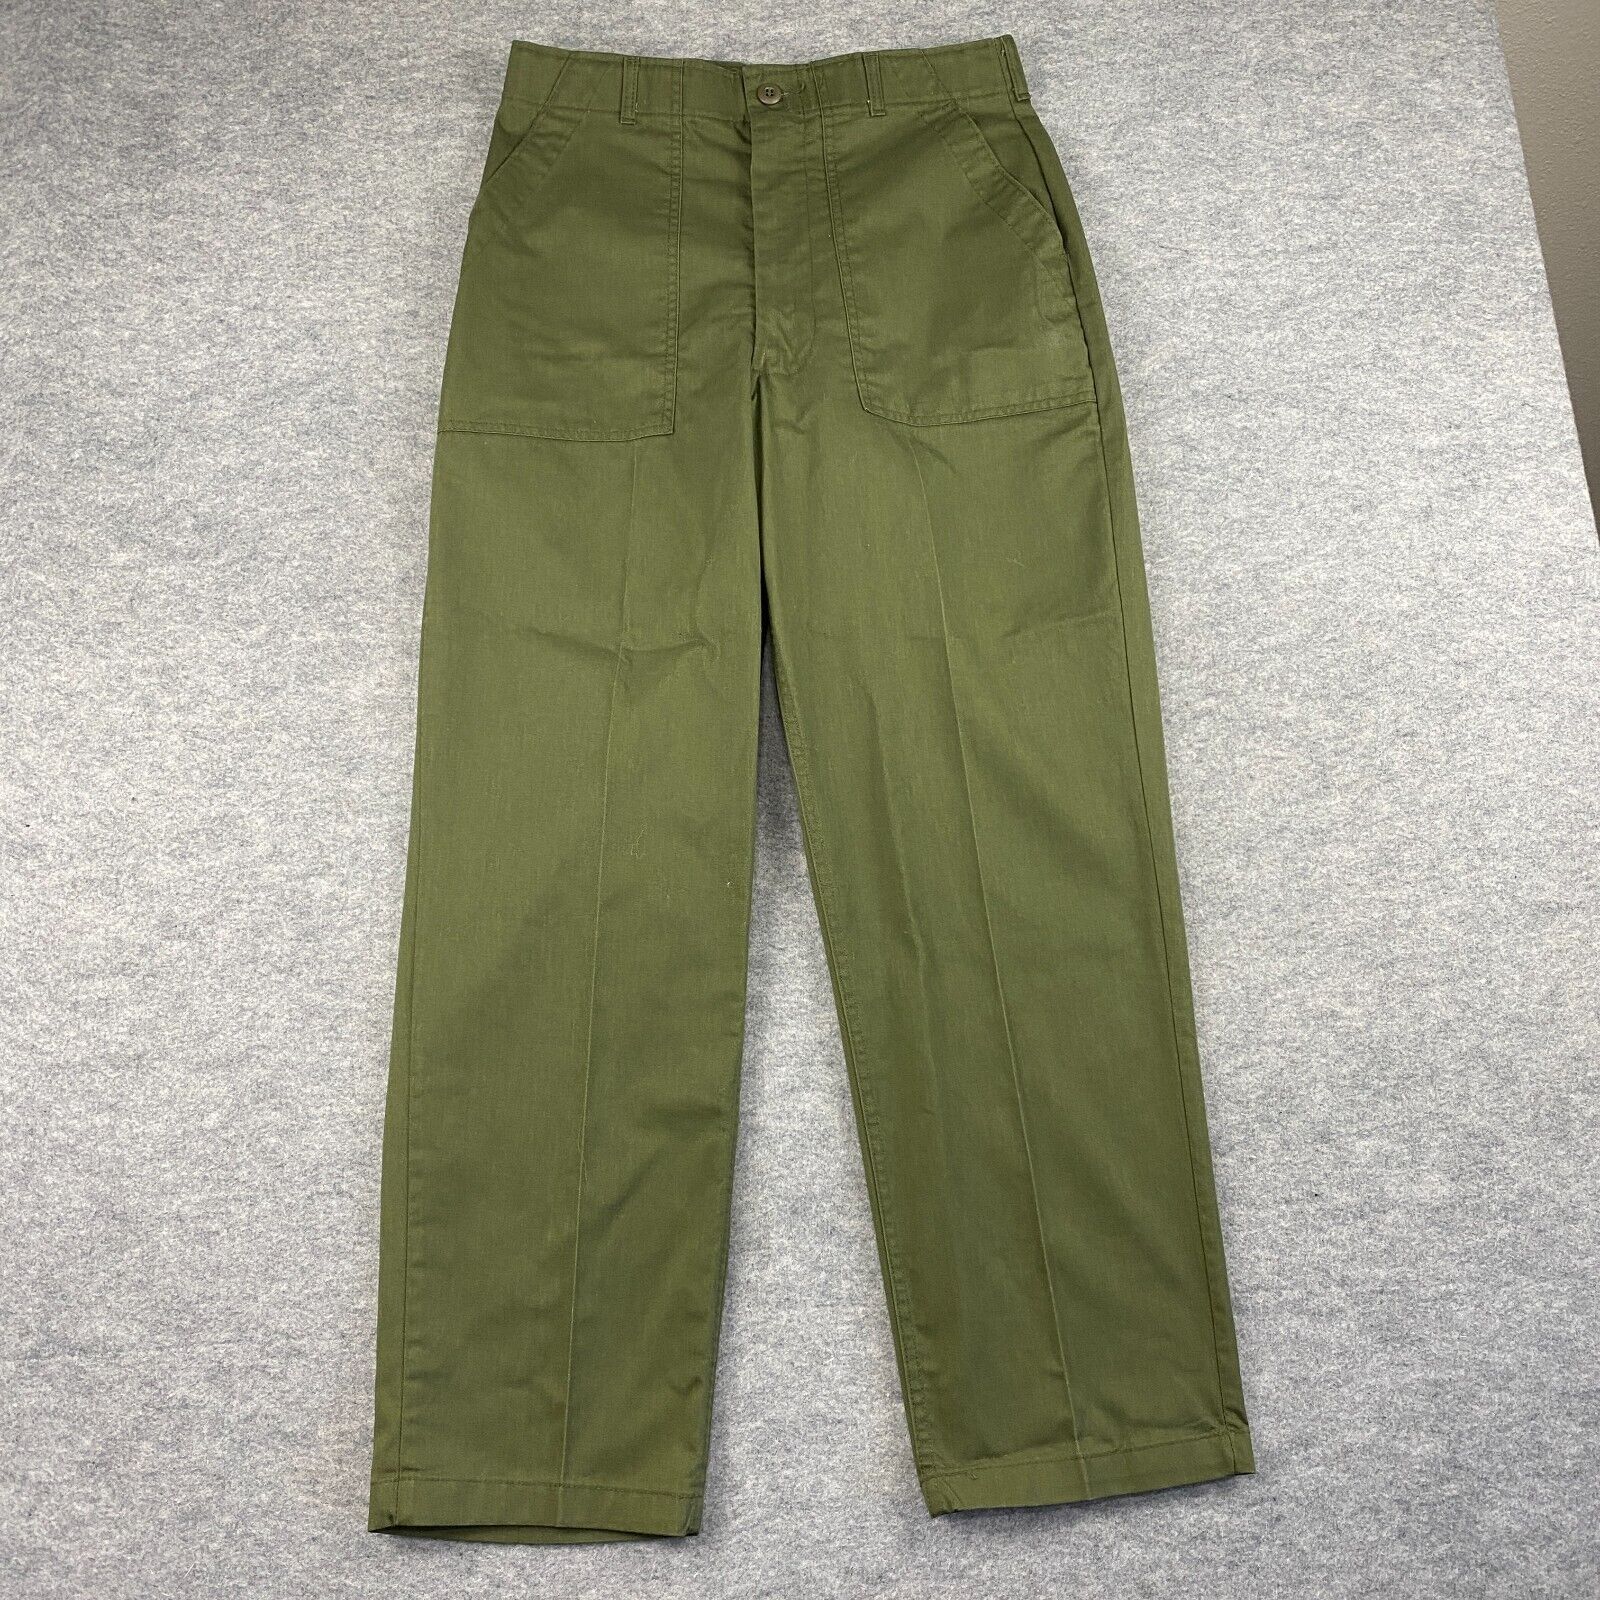 VTG 1970s Military Utility Trousers OG-507 Pants 34x31 Green Vietnam